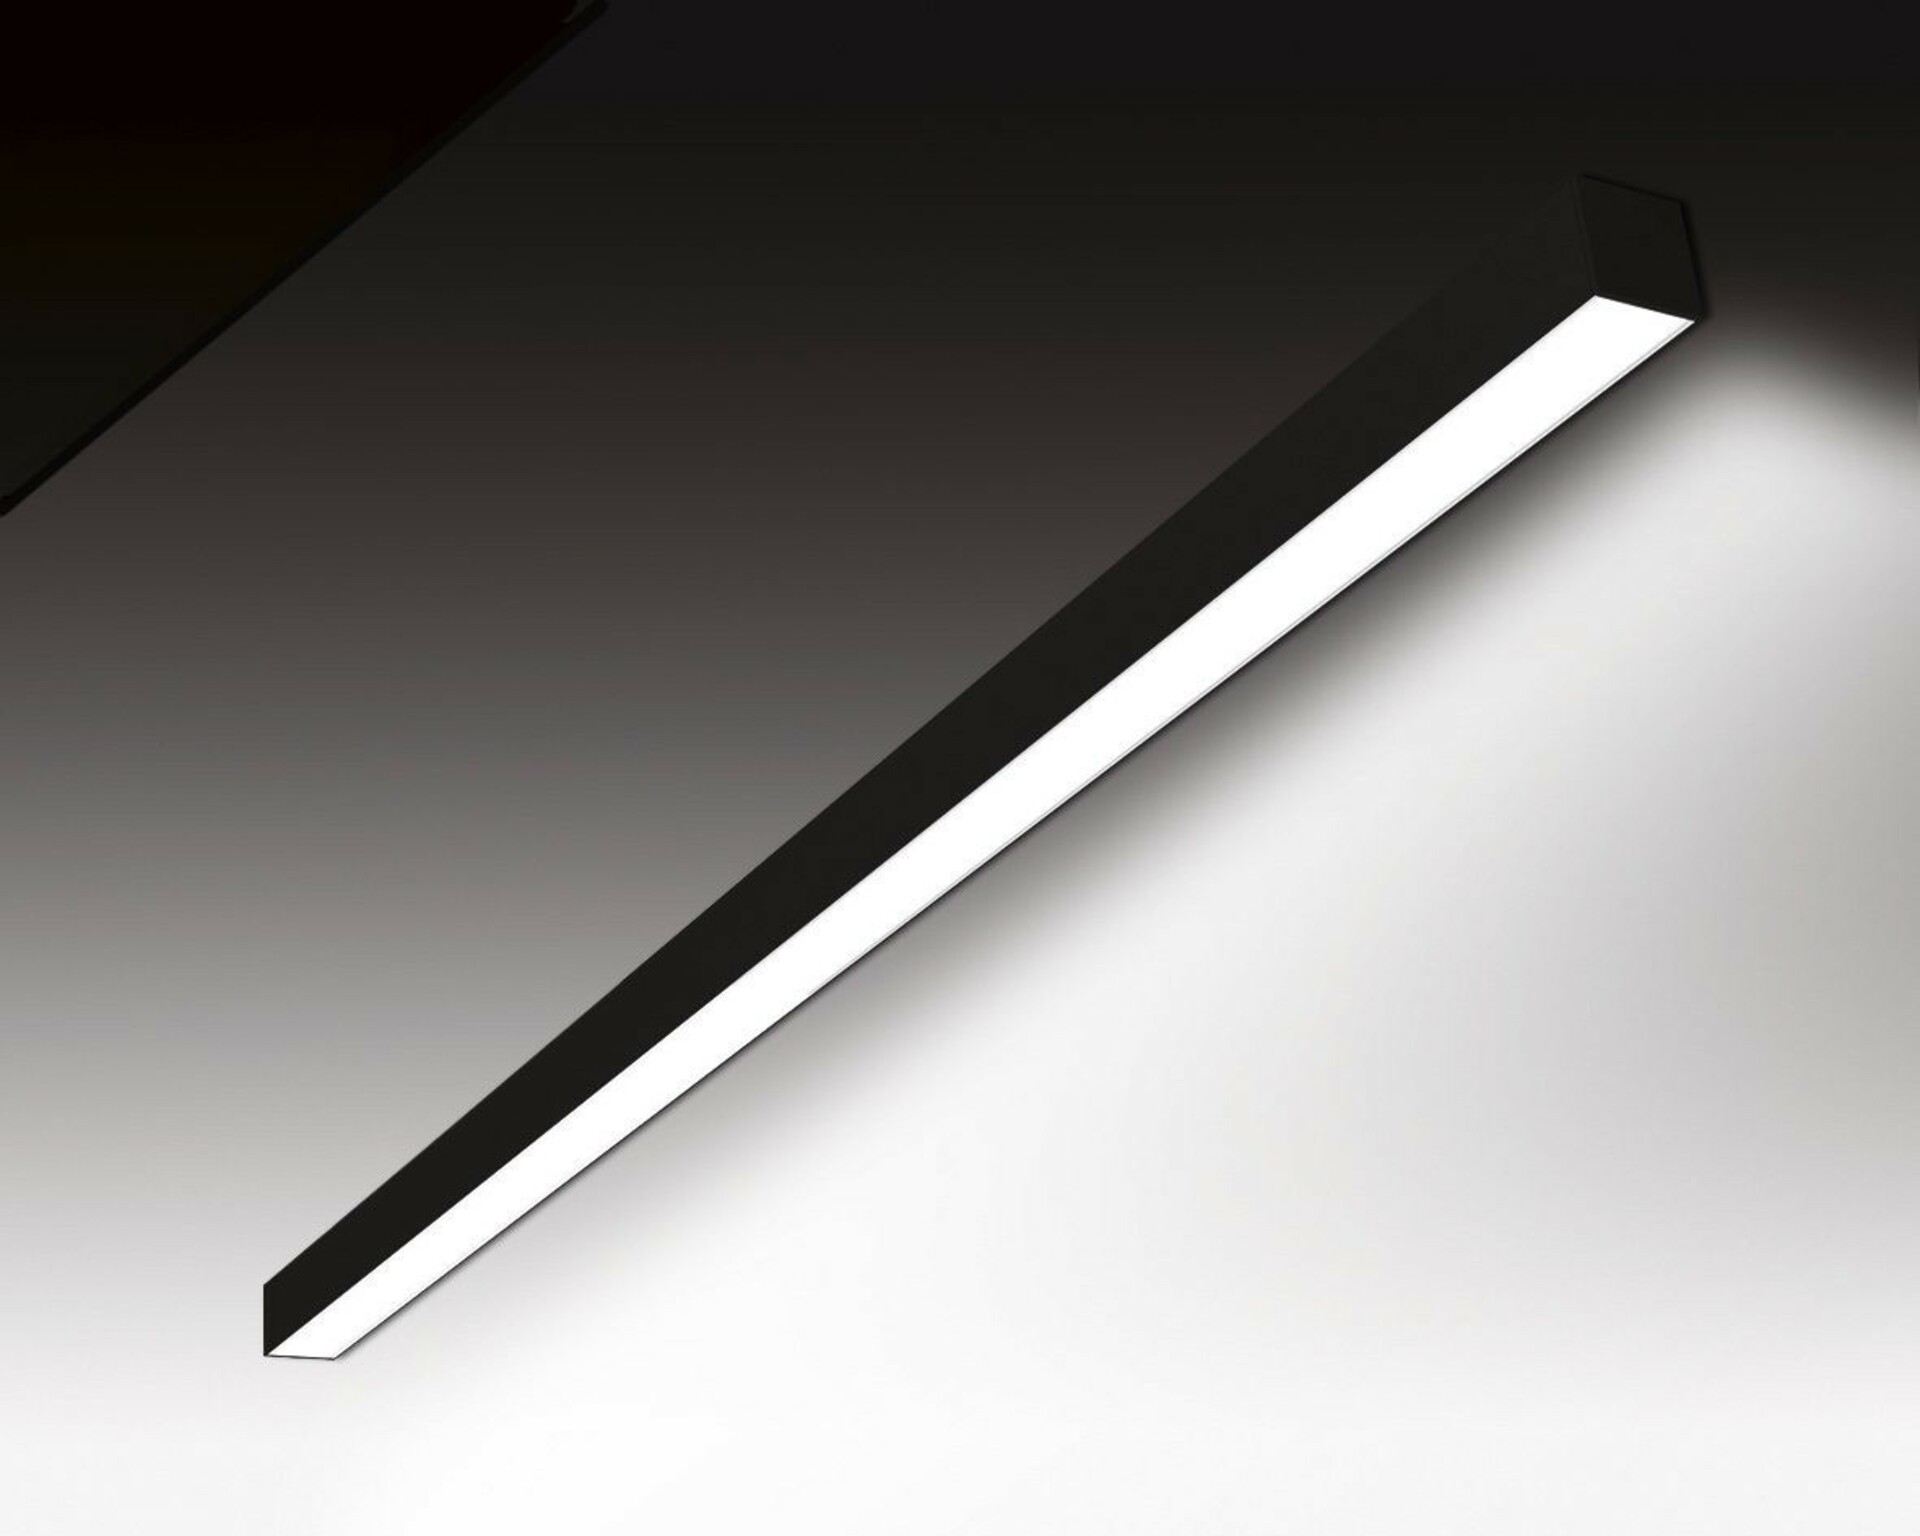 SEC Nástěnné LED svítidlo WEGA-MODULE2-DA-DIM-DALI, 8 W, černá, 572 x 50 x 50 mm, 3000 K, 1120 lm 320-B-011-01-02-SP